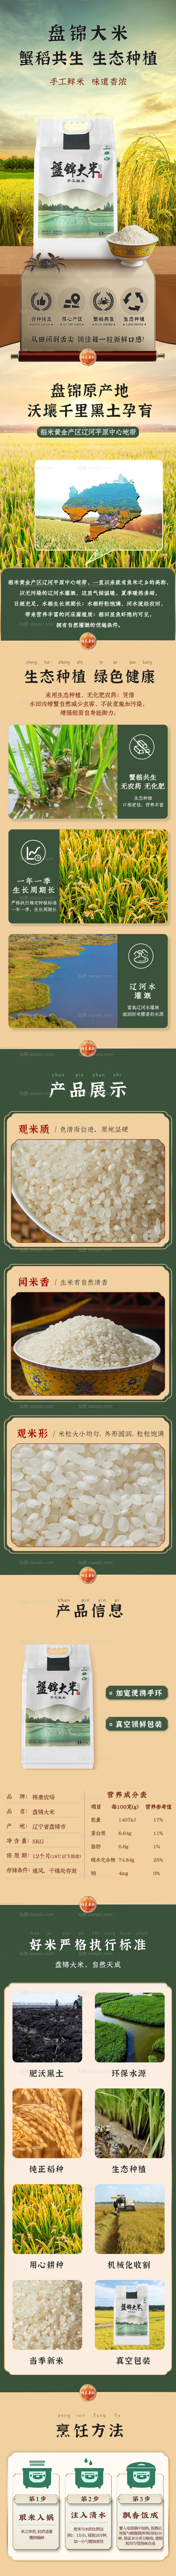 素材乐-大米生态种植详情页